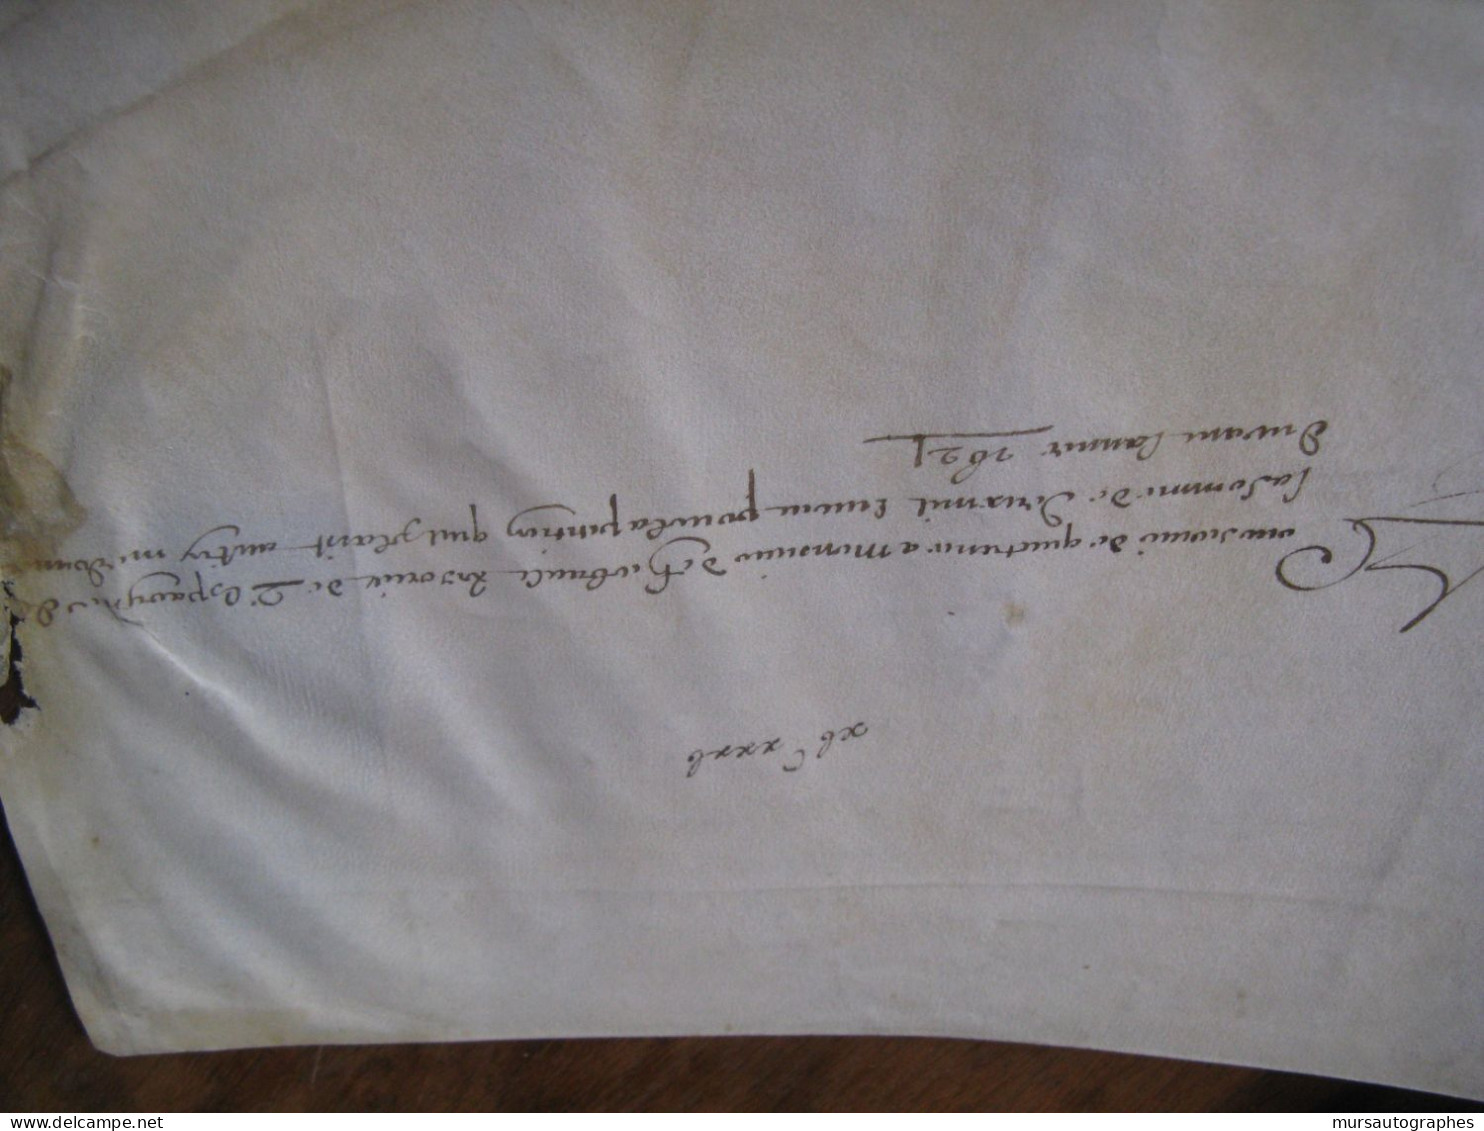 JEAN-BAPTISTE VASSAL Autographe Signé 1621 PHELYPEAUX LOUIS XIII Parchemin RARE - Historical Figures